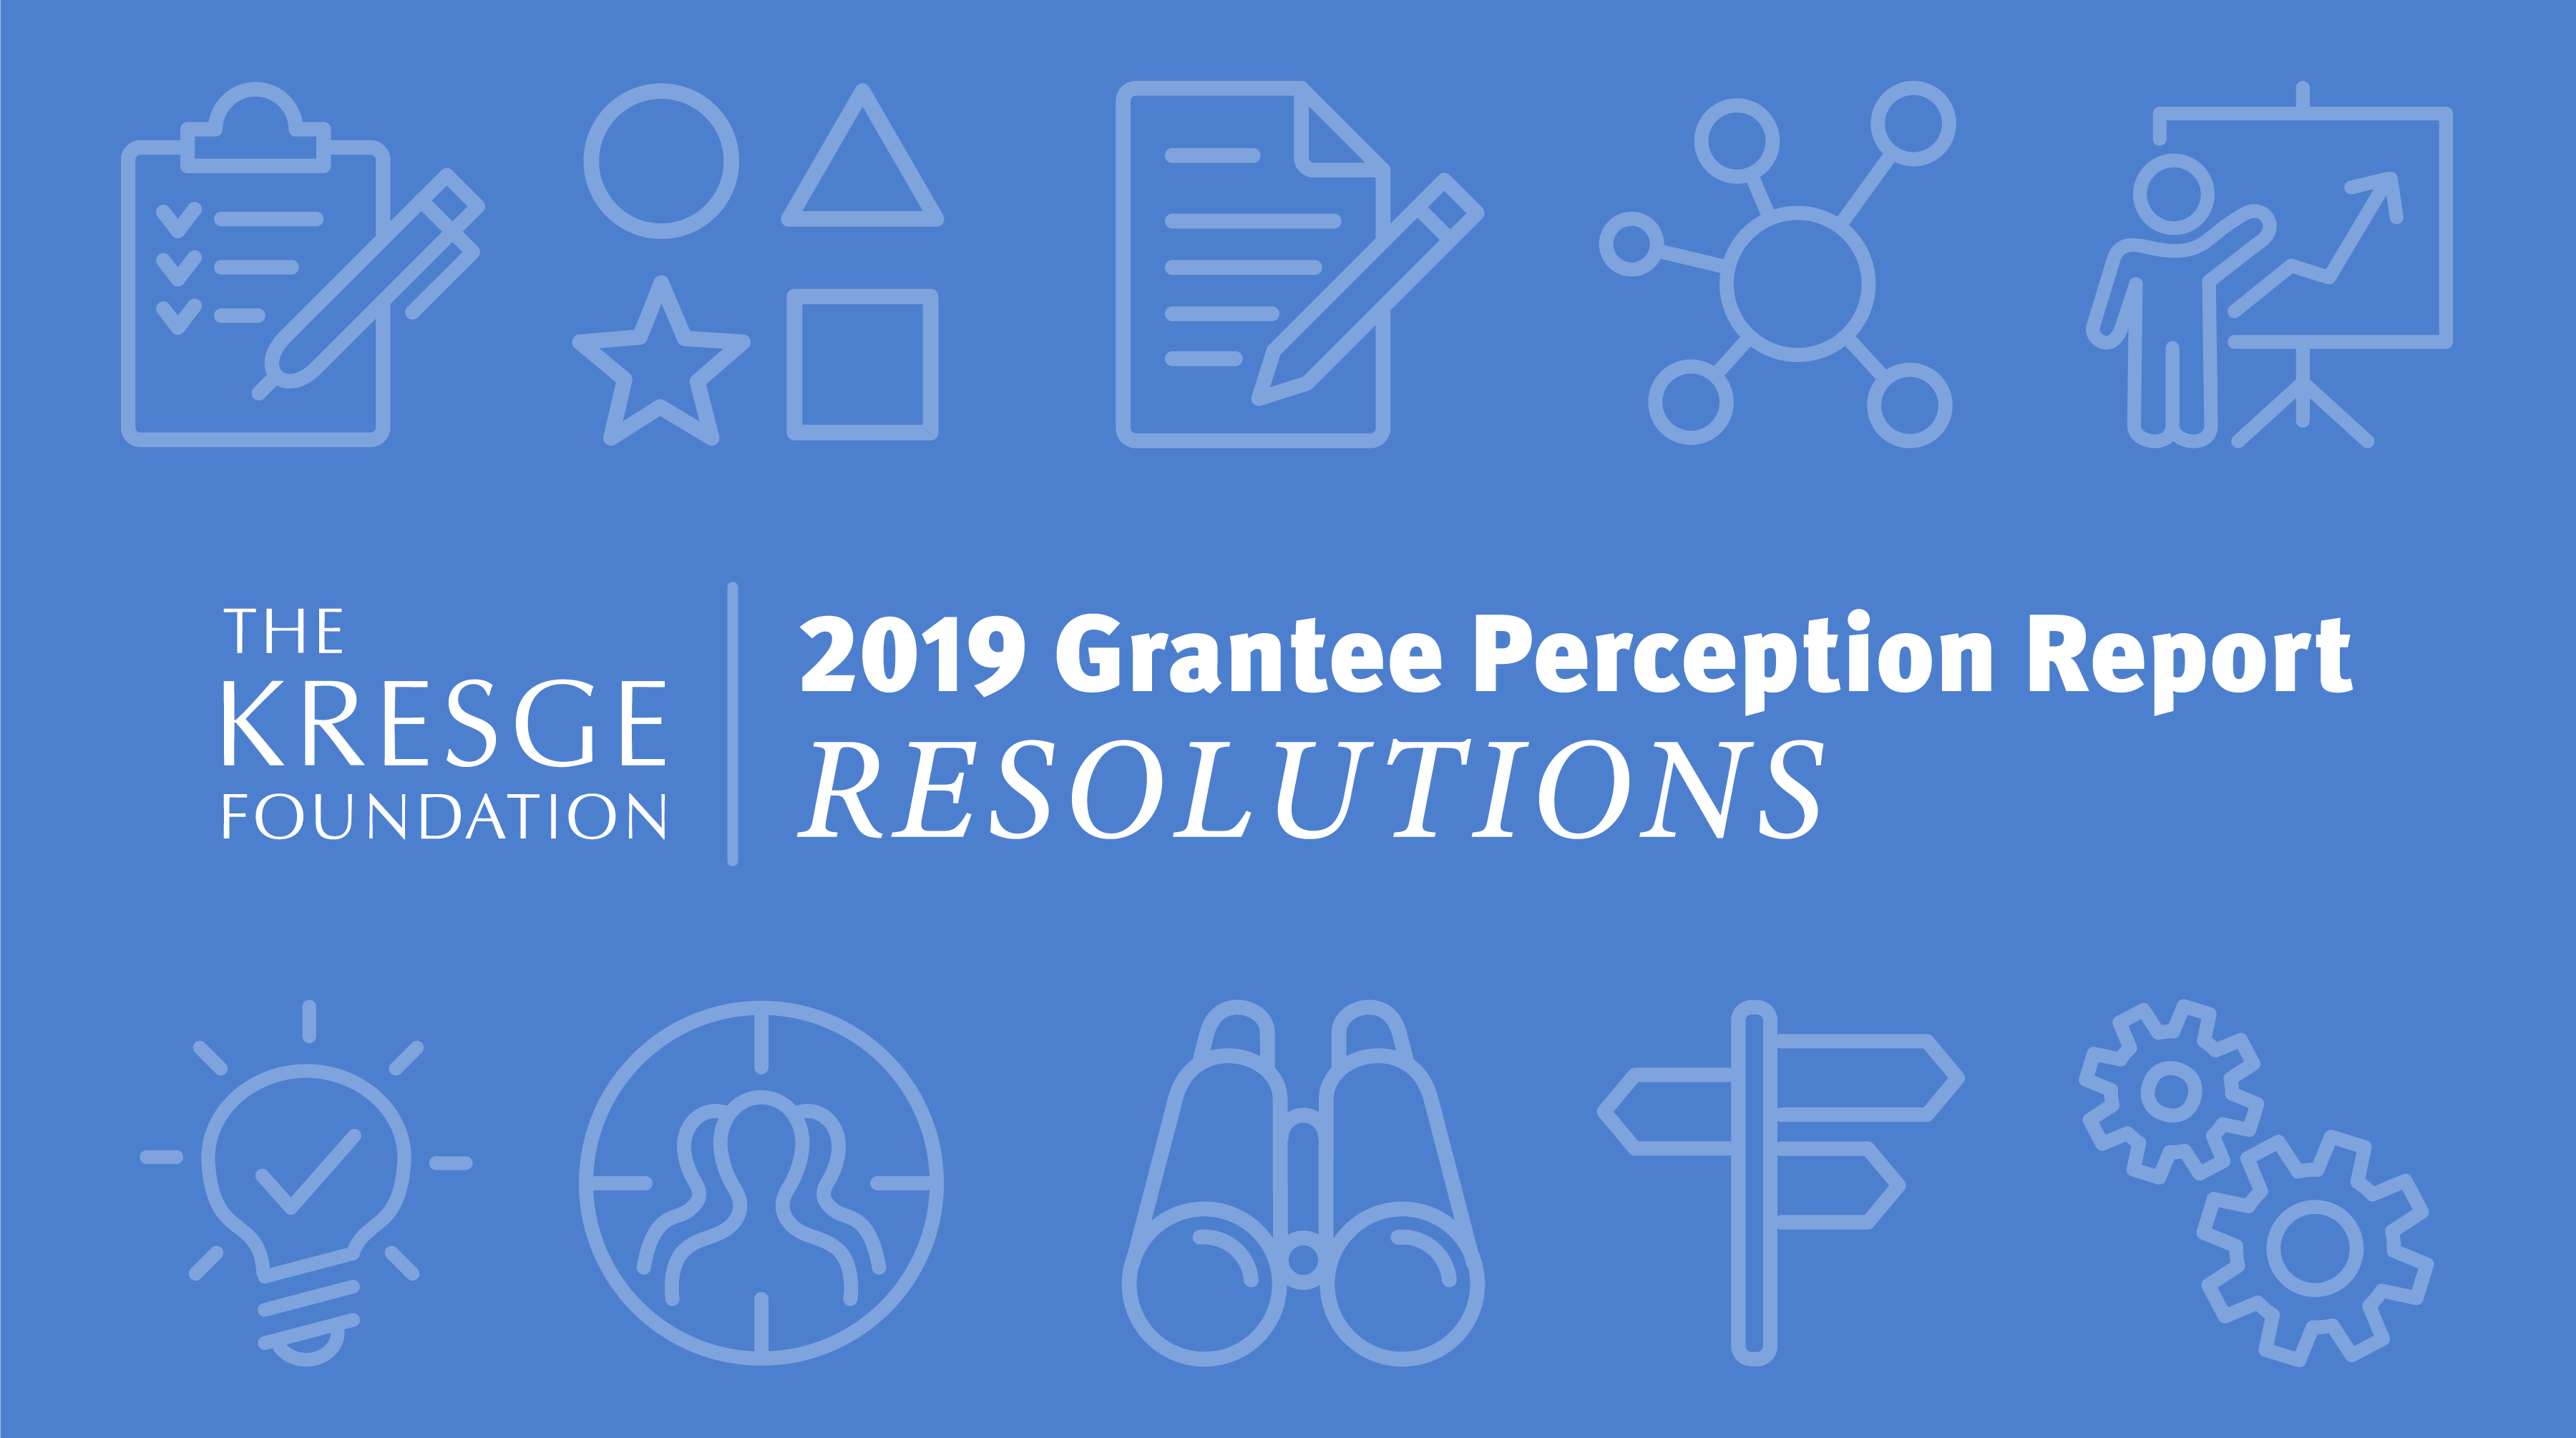 2019 Grantee Perception Report graphic